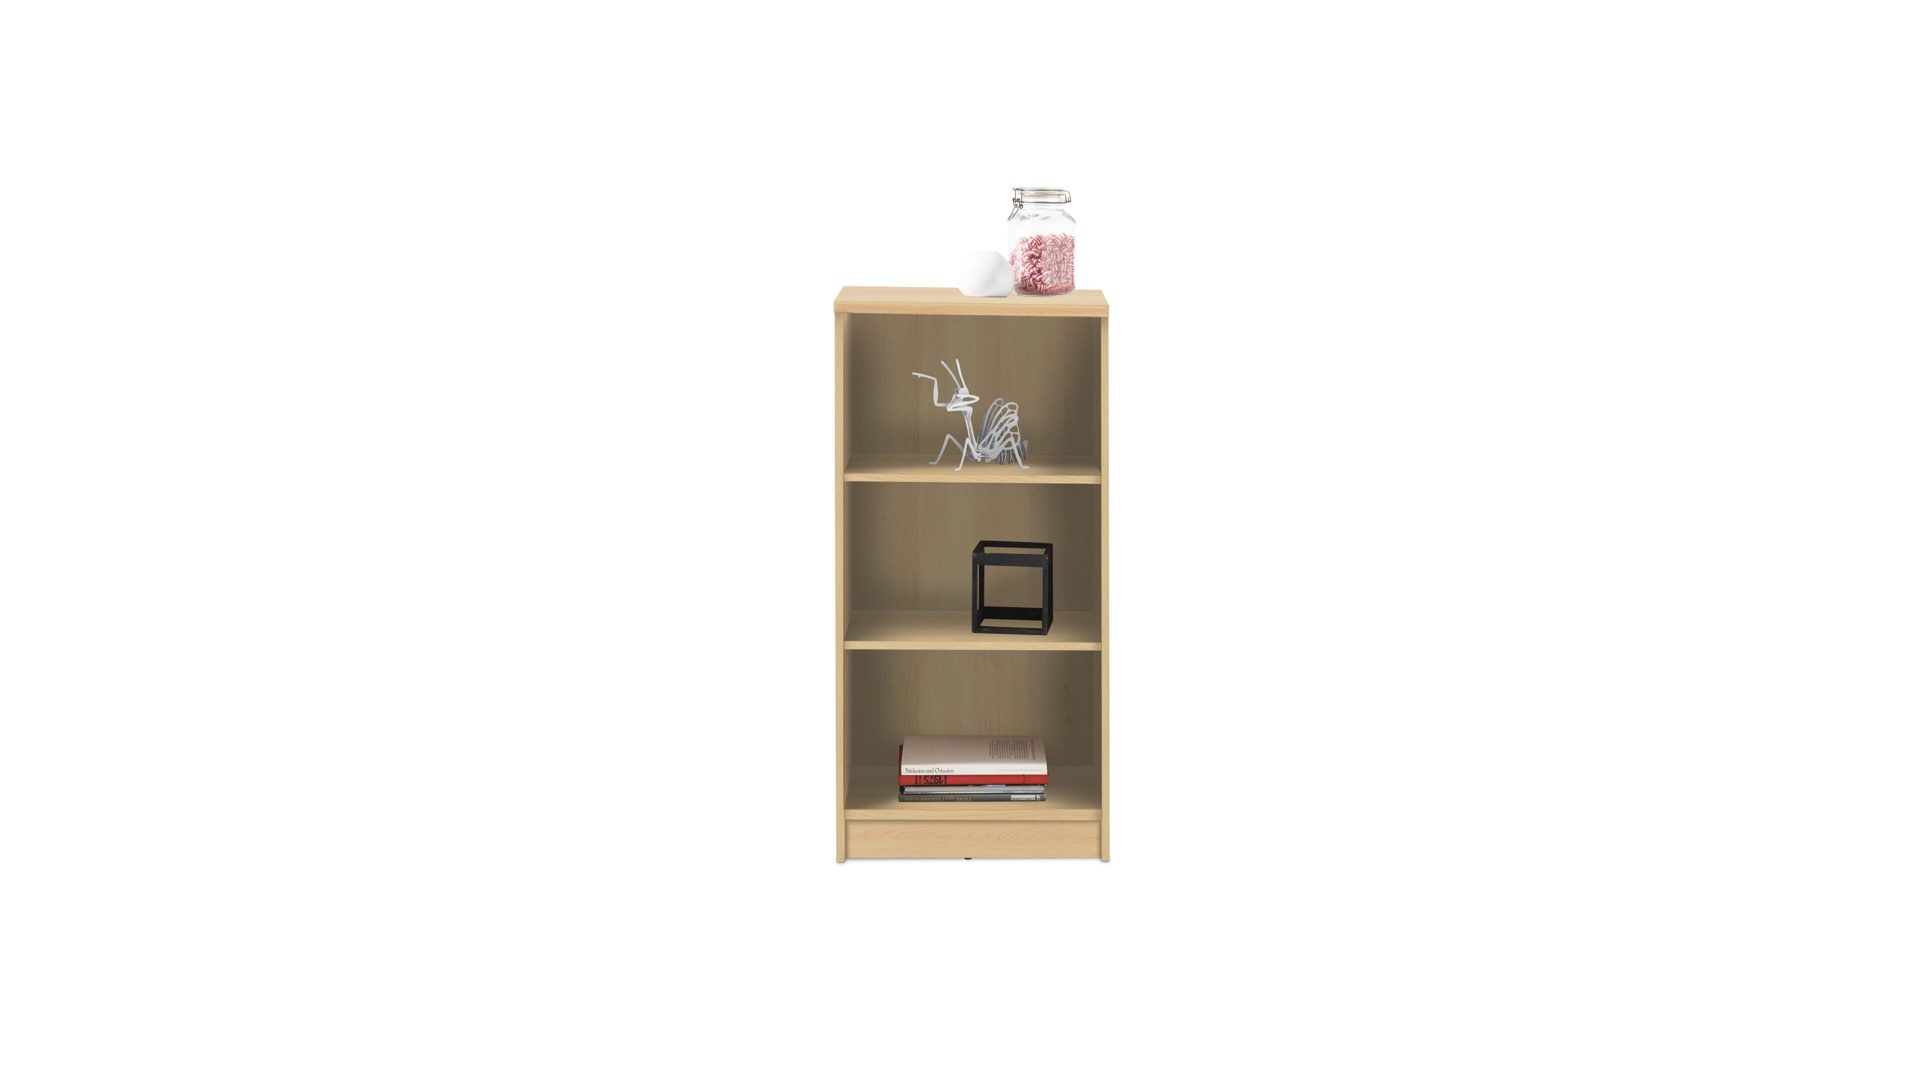 Regal Bega consult aus Holz in Holzfarben Bücherregal bzw. Standregal buchefarbene Kunststoffoberflächen – Höhe ca. 111 cm, zwei Böden